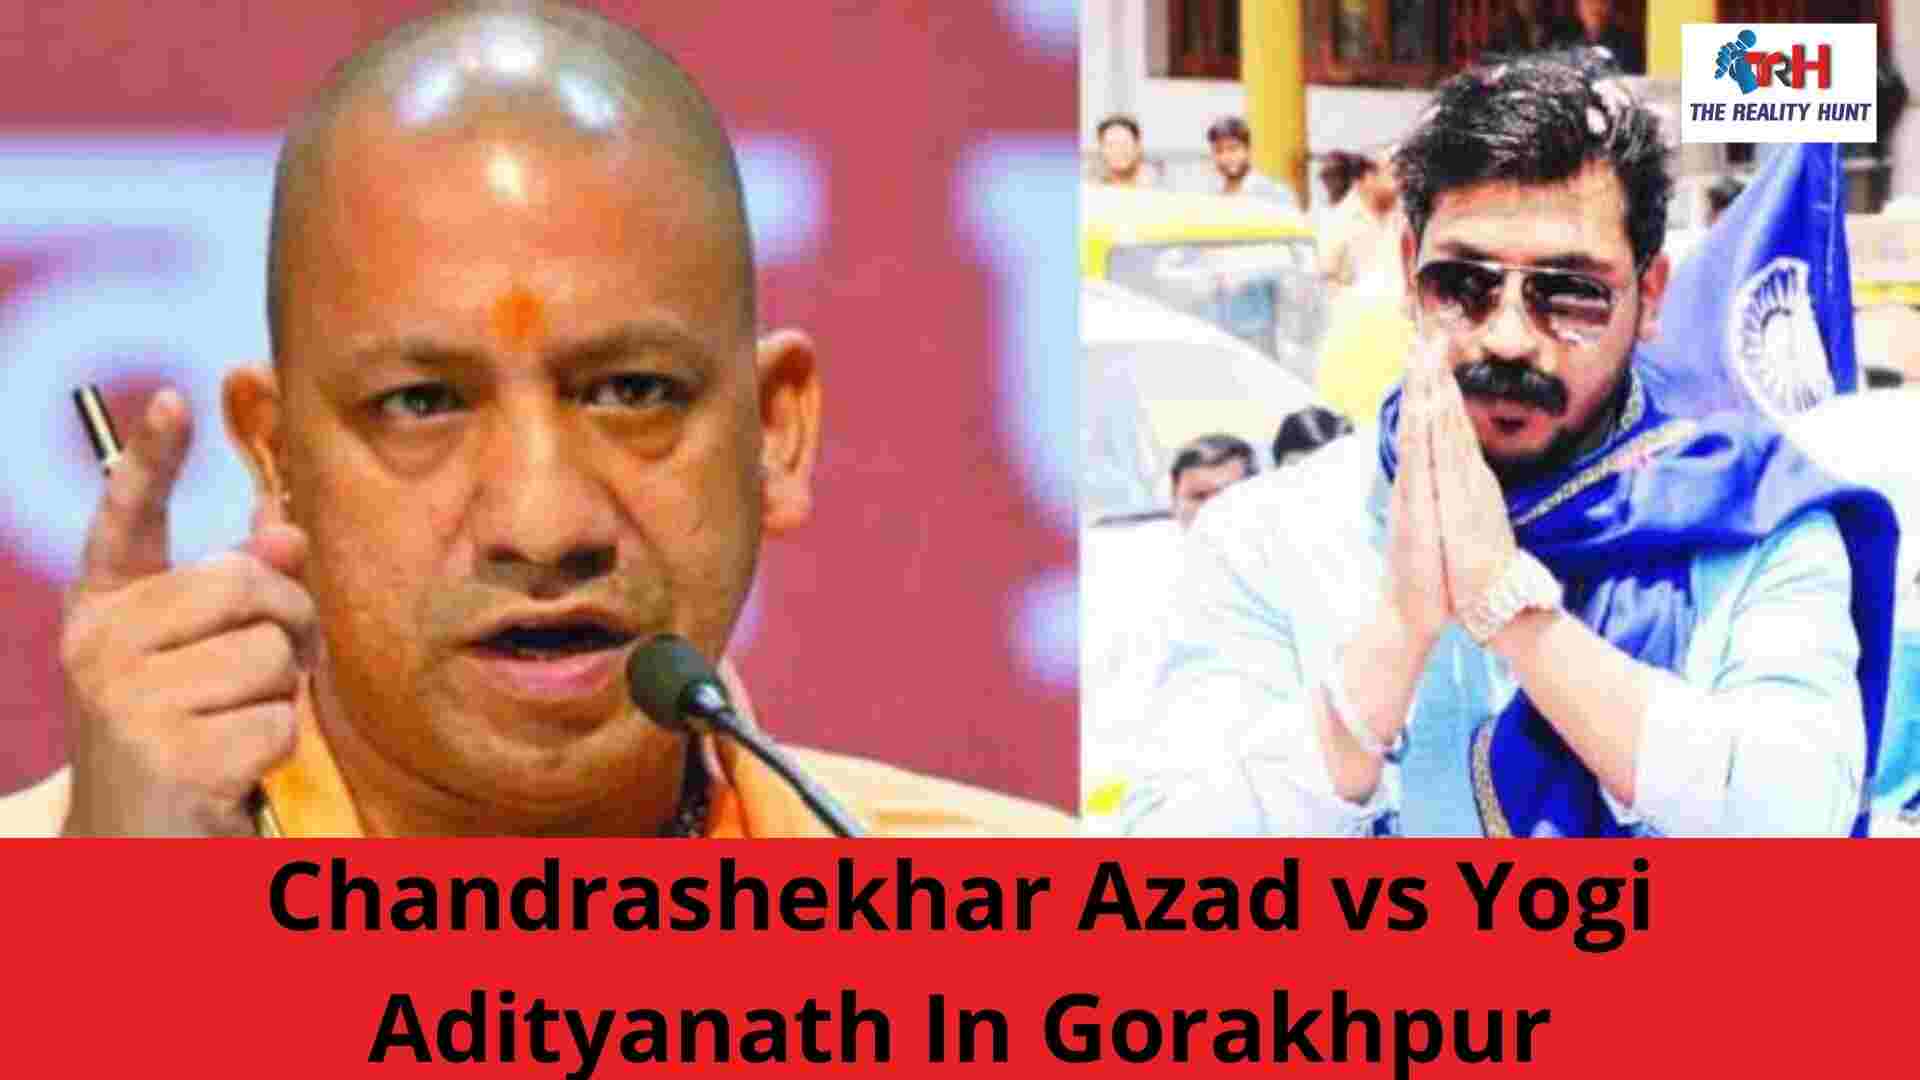 UP Election 2022: Bhim Army’s Chandrashekhar Azad vs Yogi Adityanath In Gorakhpur